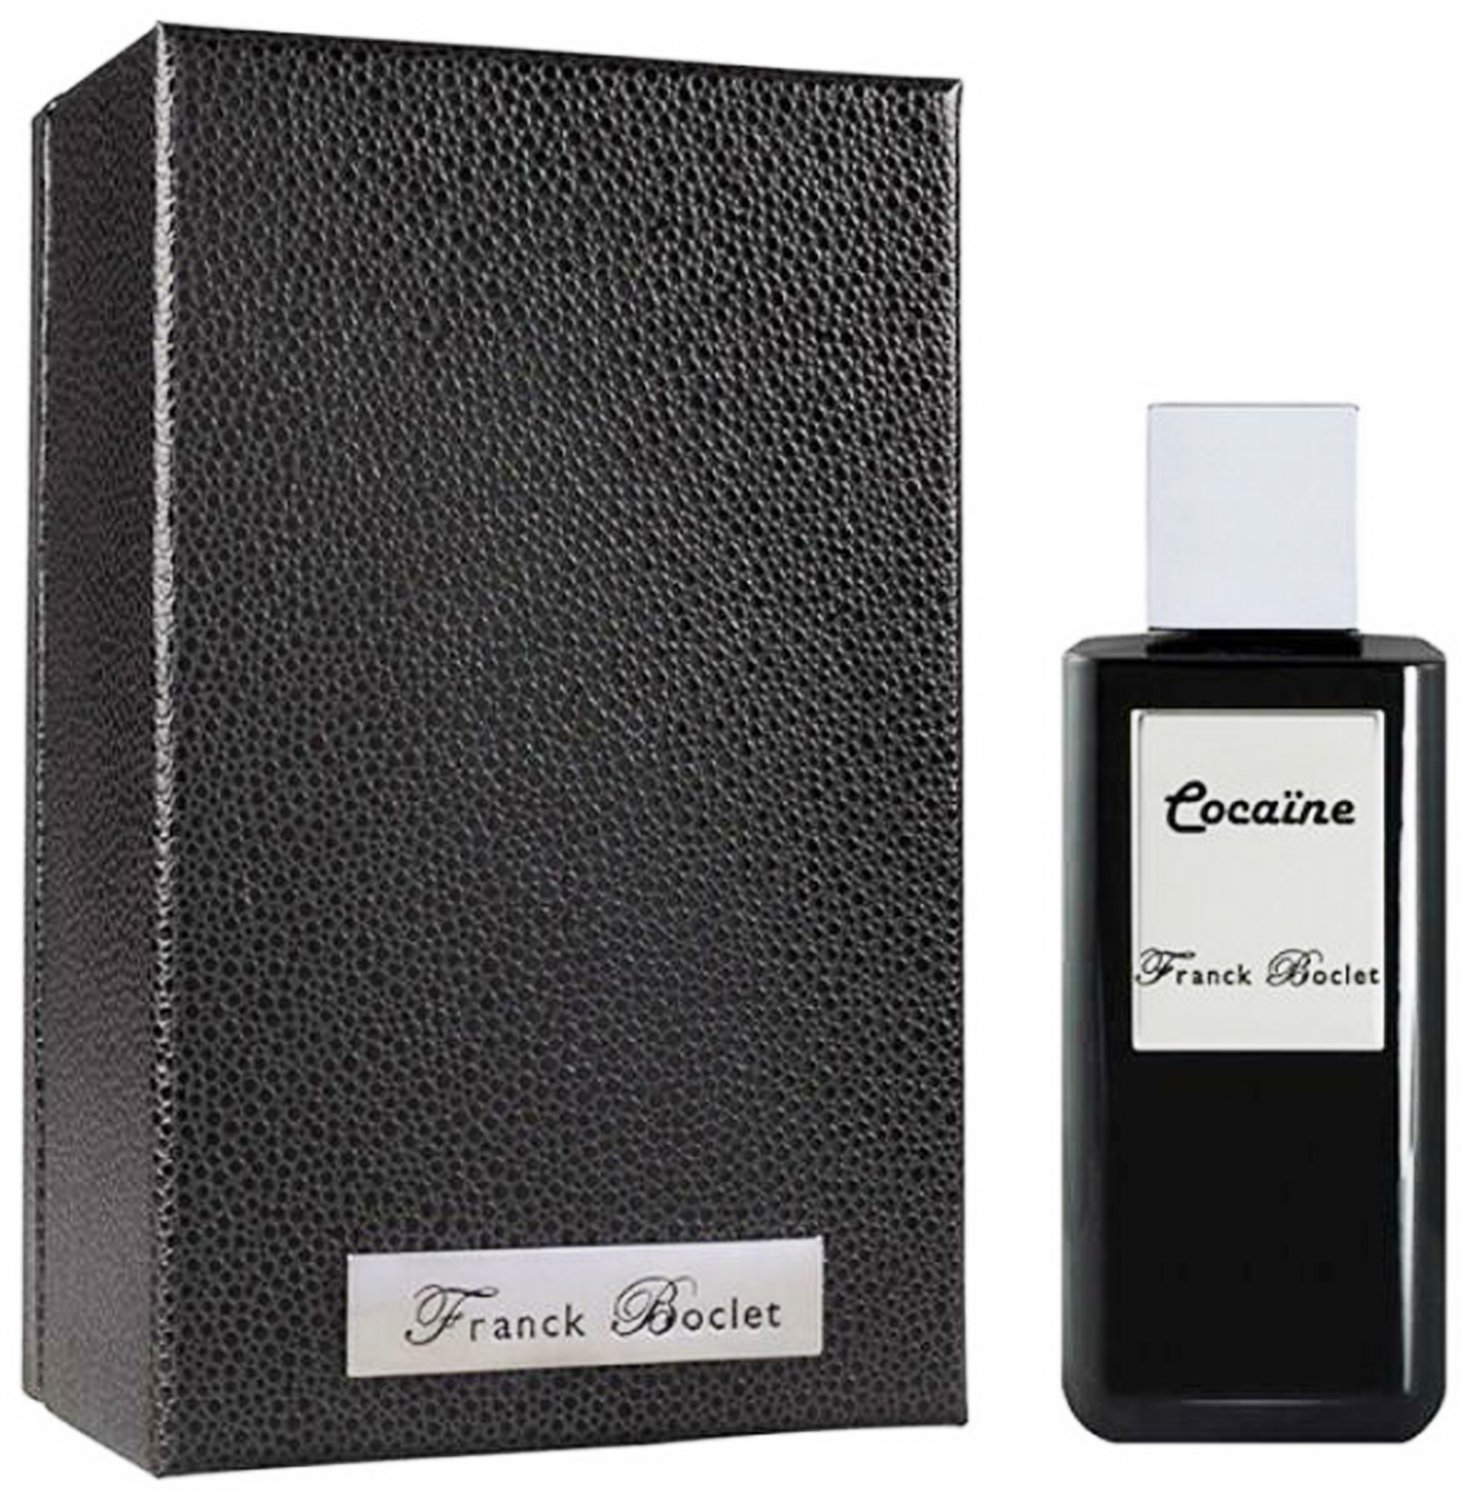 Franck Boclet Cocaine Extrait de Parfum 100ml unisex